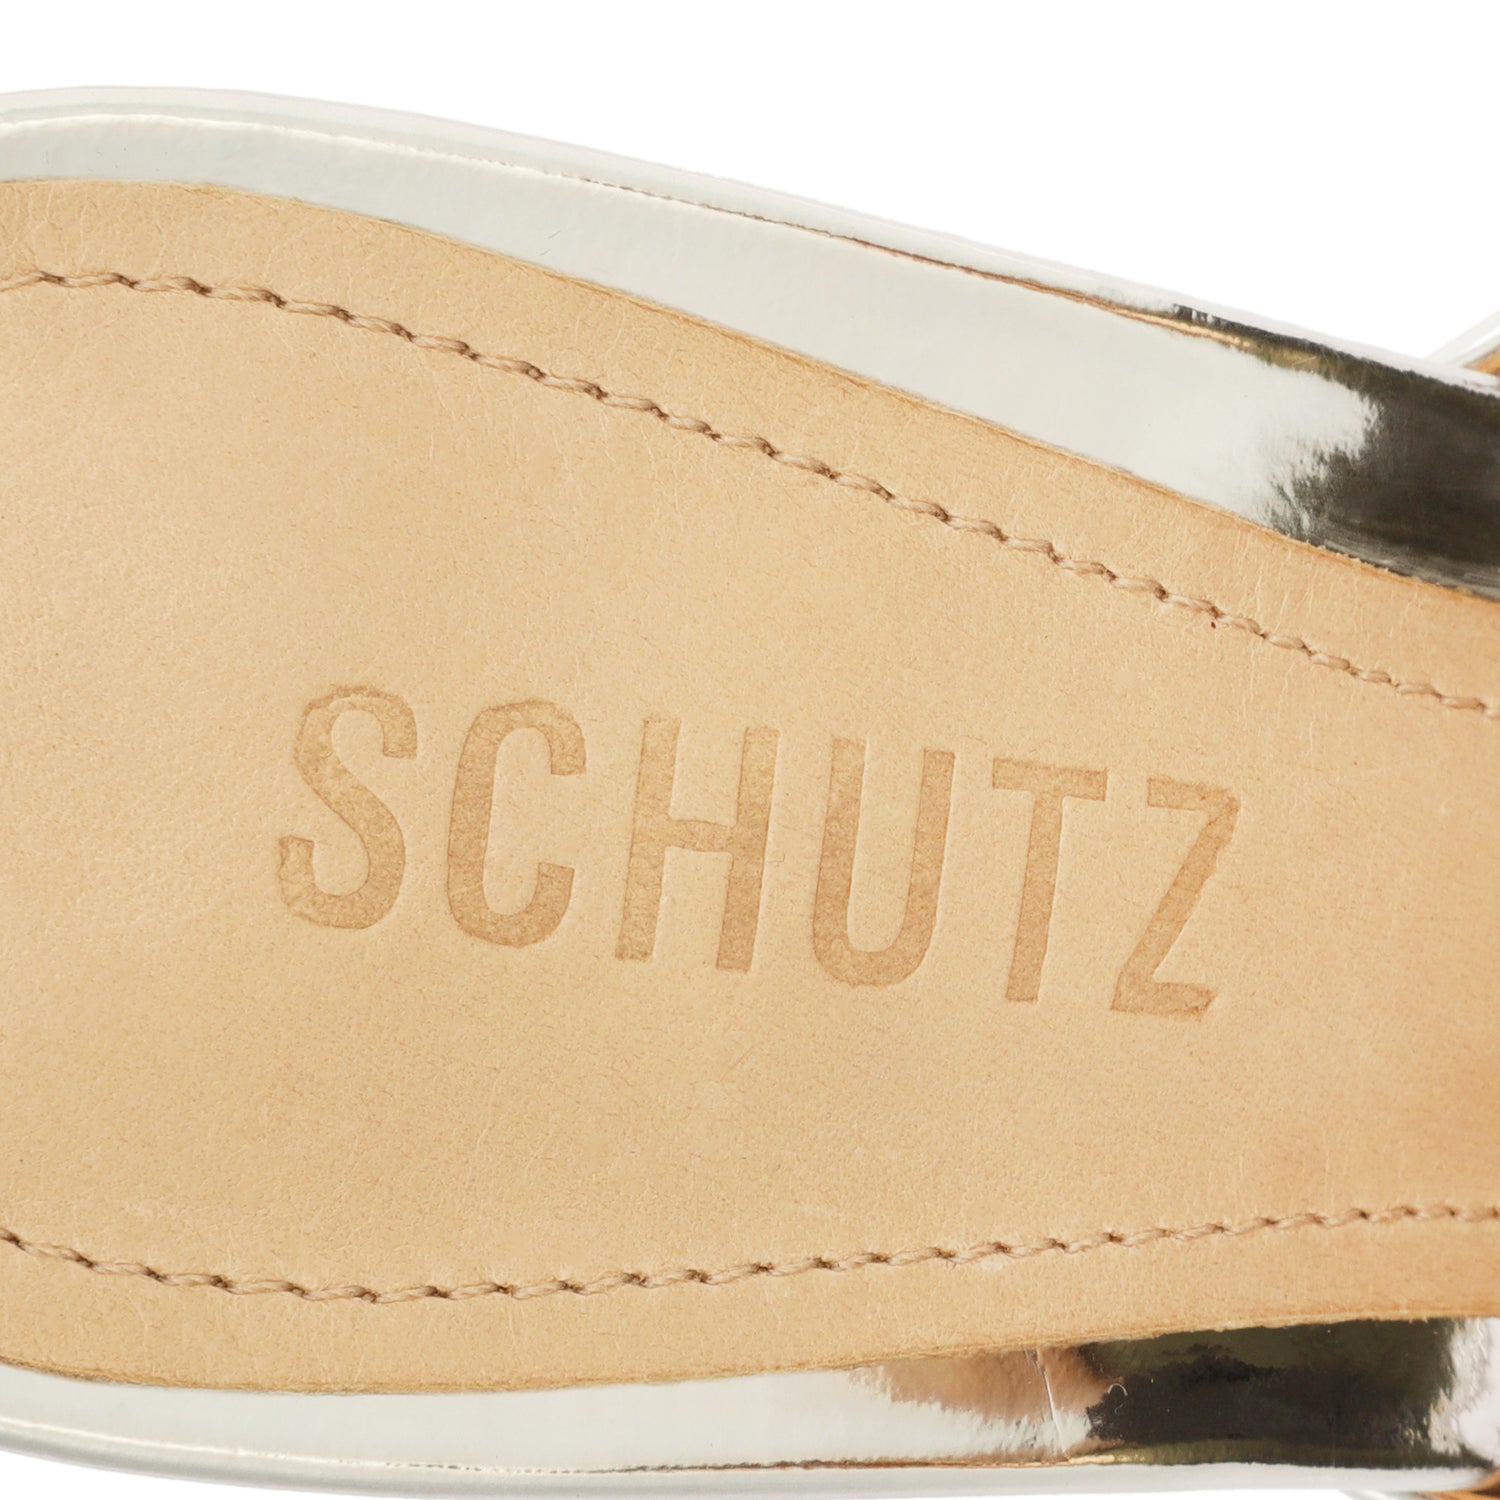 Andrina Specchio Leather Sandal Sandals Sale    - Schutz Shoes